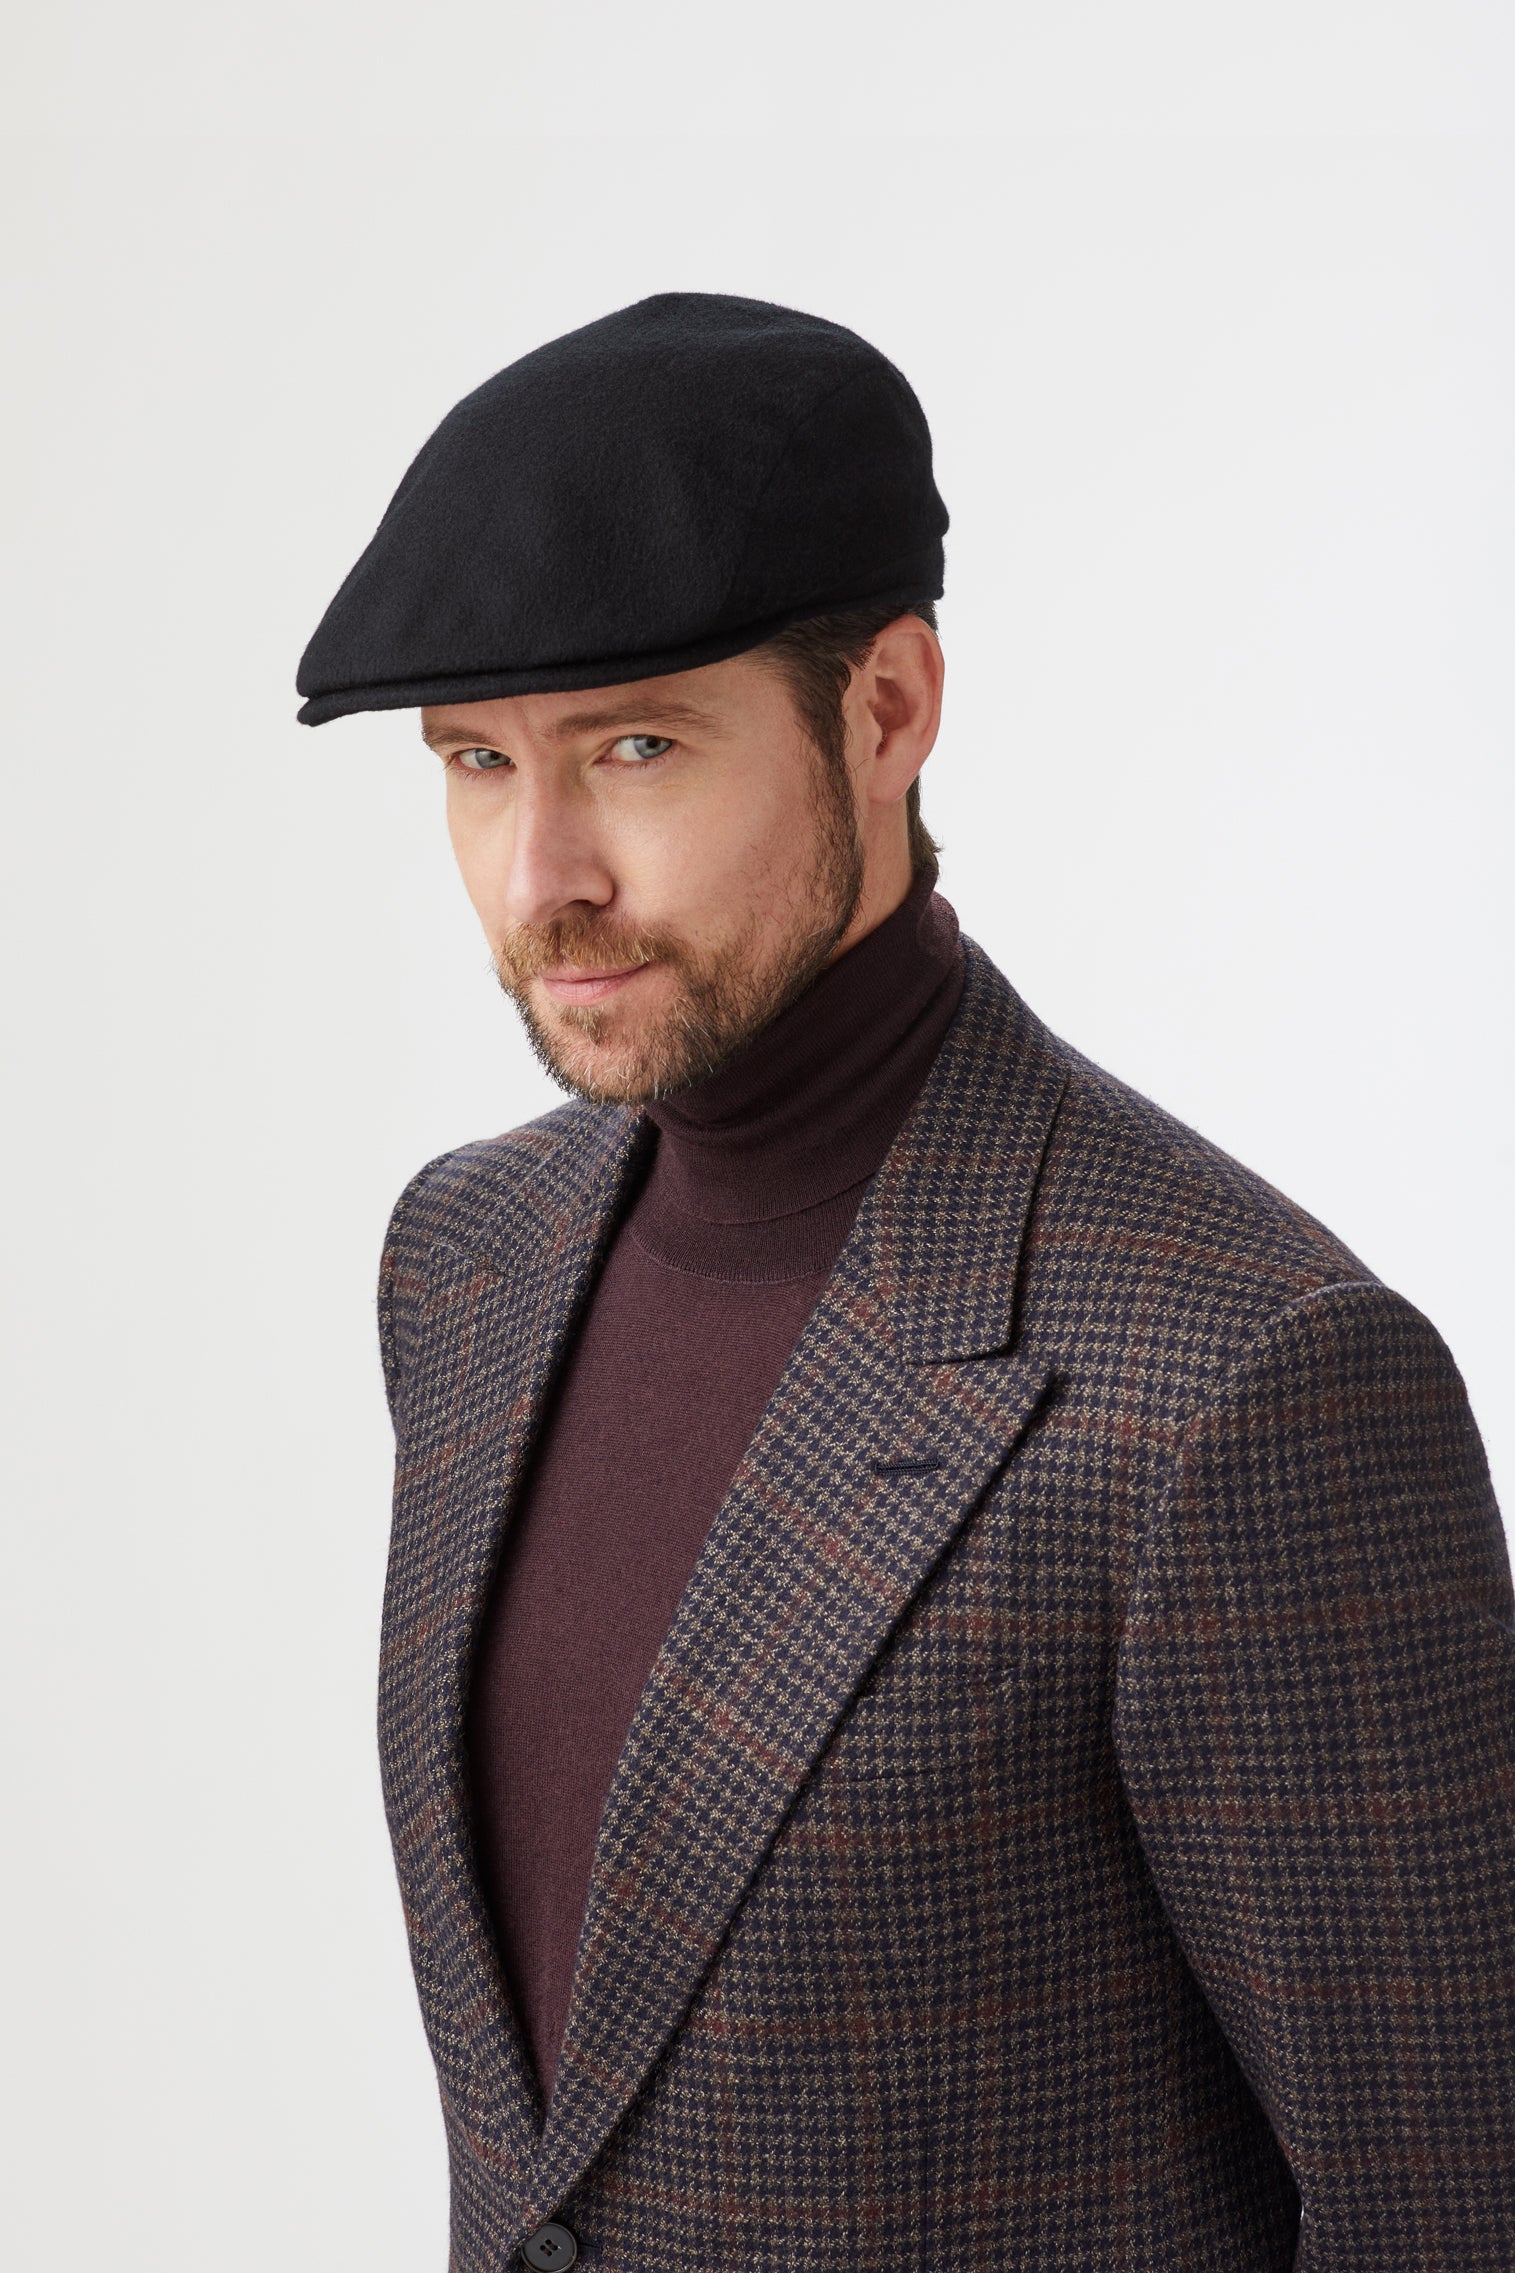 Escorial Wool Berkeley Flat Cap - Hats for Oval Face Shapes - Lock & Co. Hatters London UK